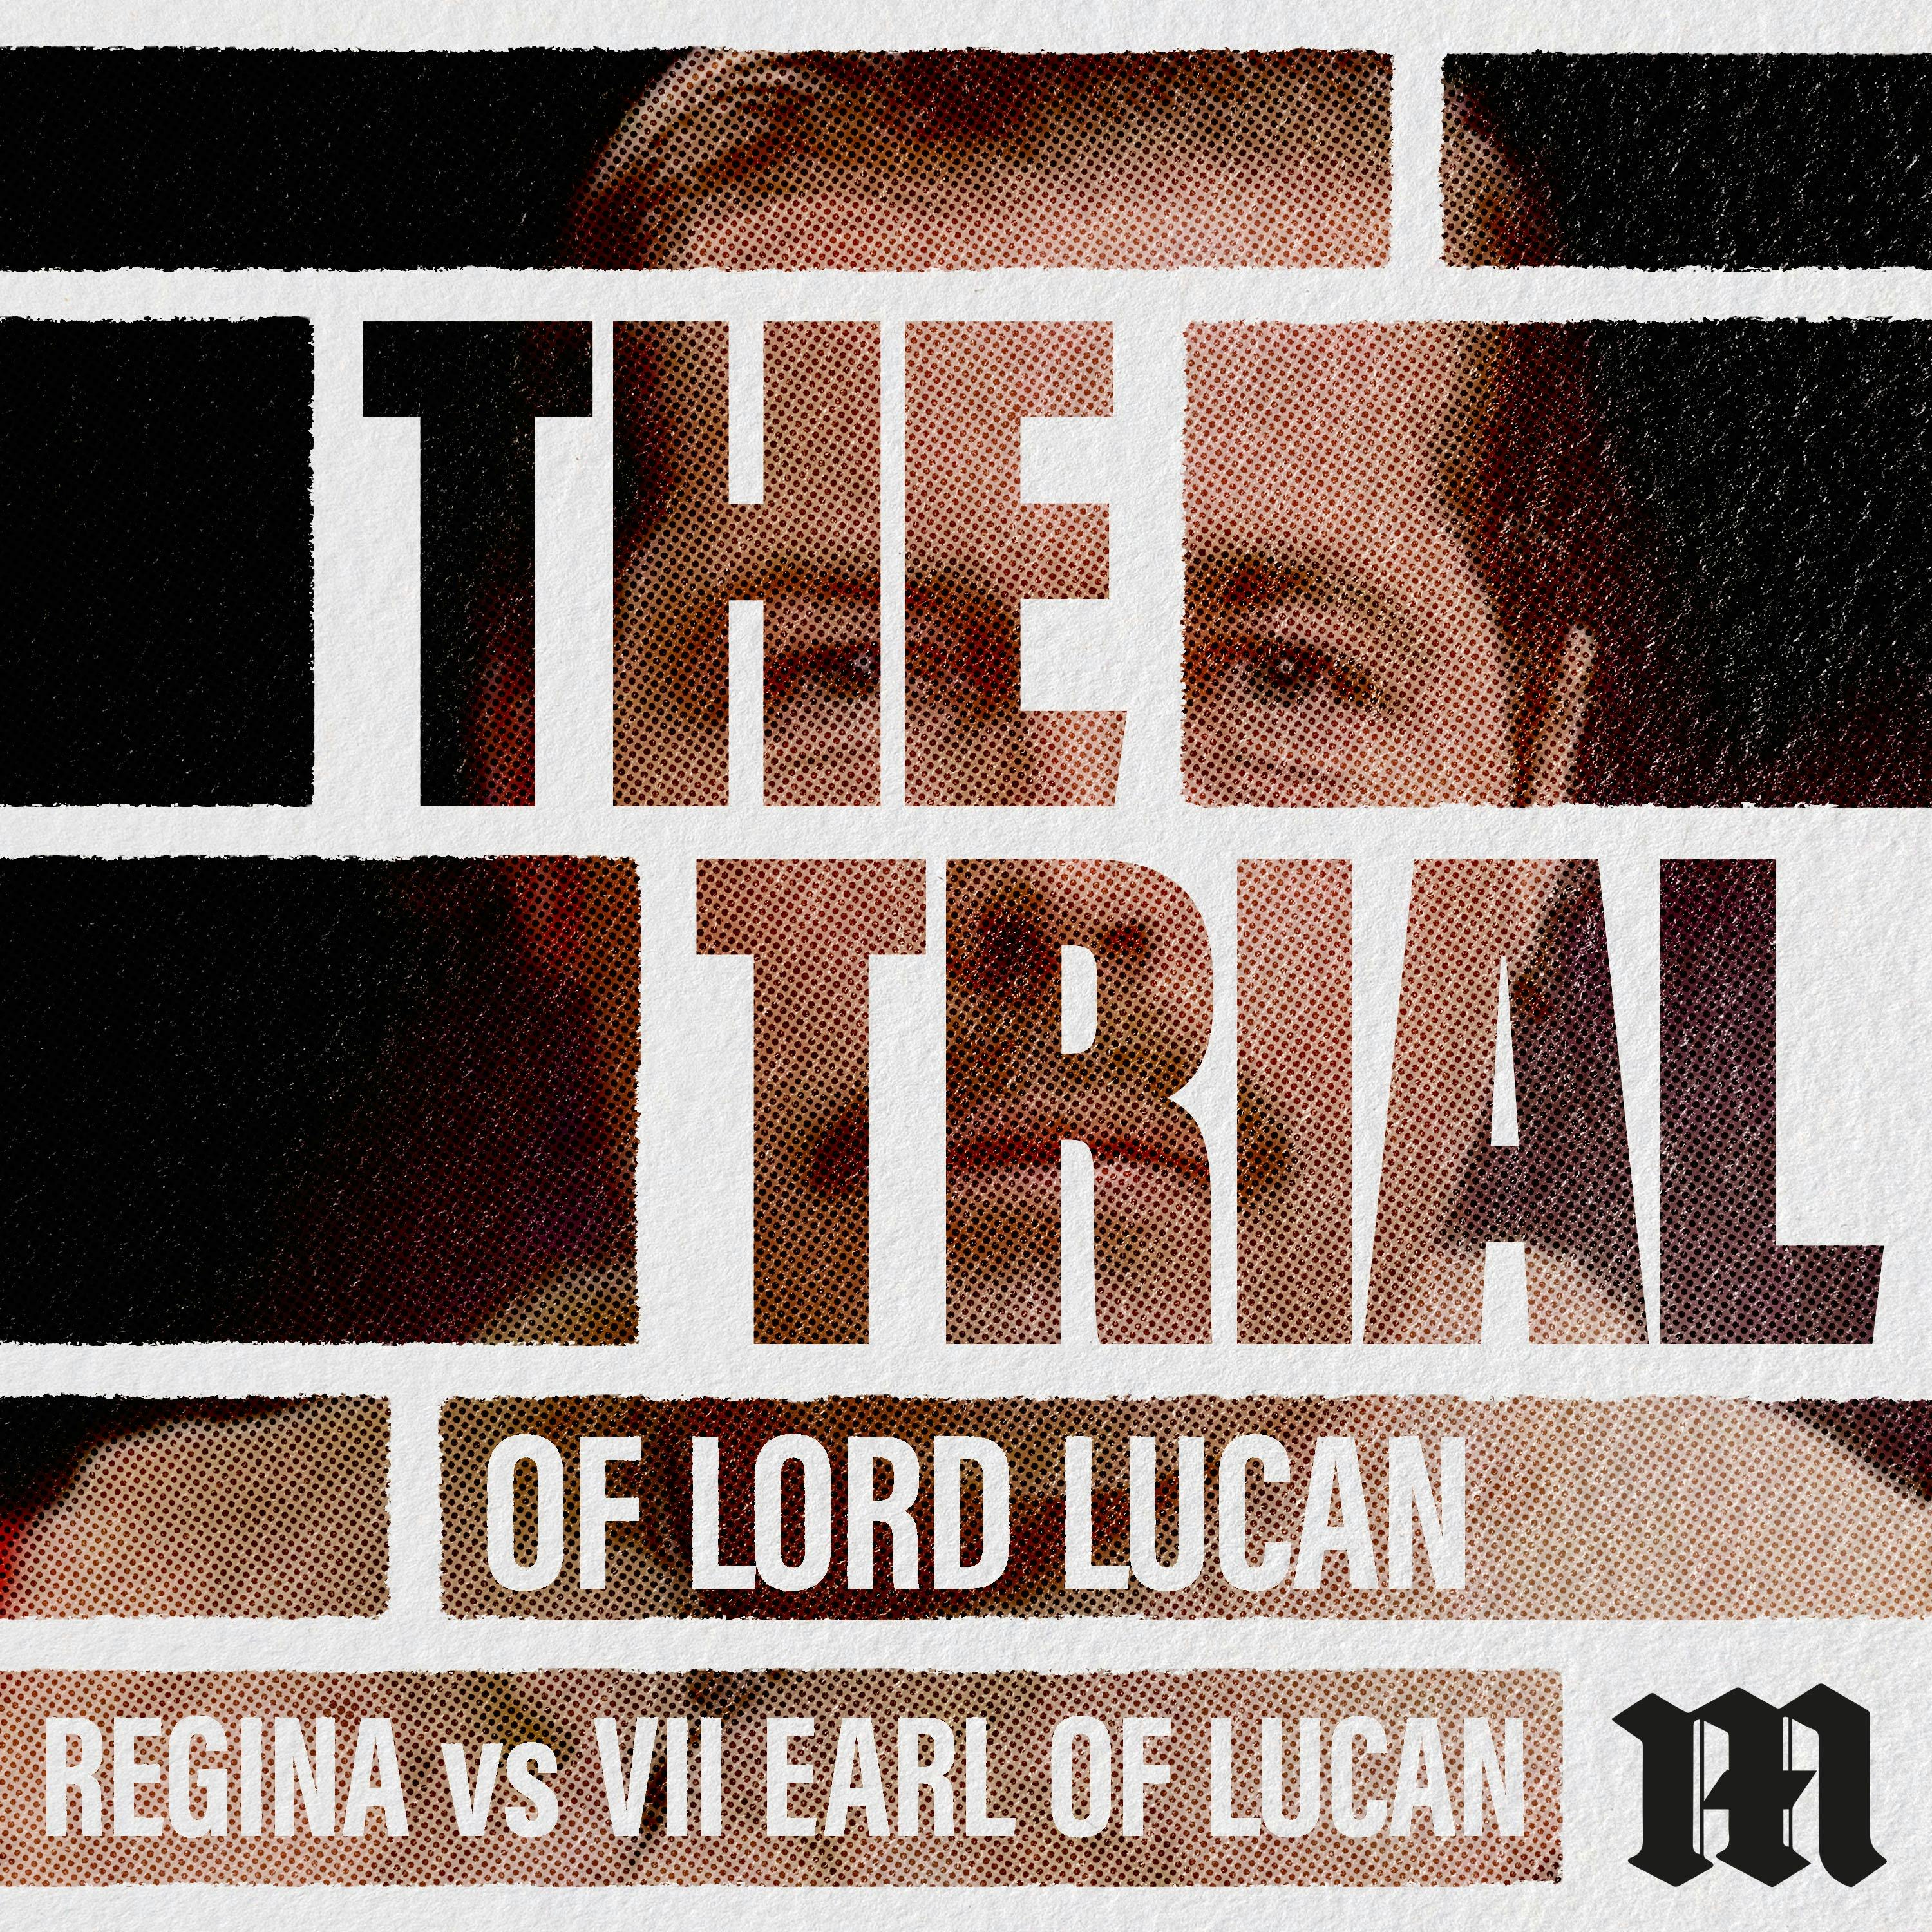 Regina vs VII Earl of Lucan